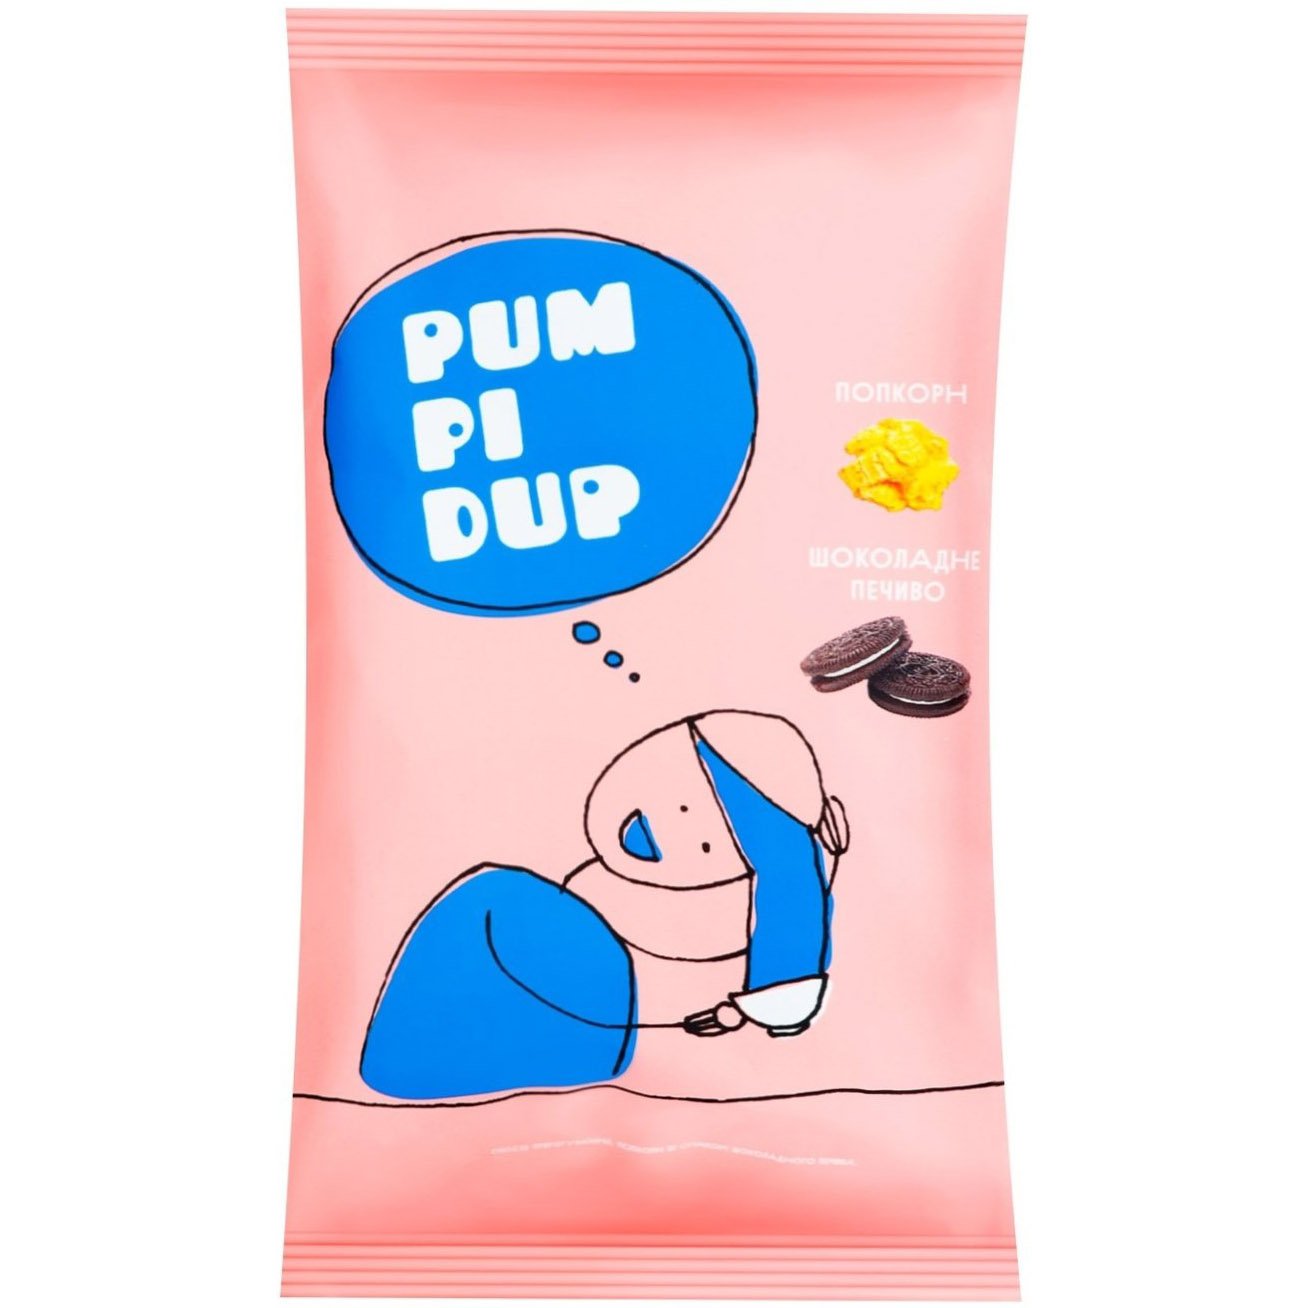 Попкорн Pumpidup со вкусом шоколадного печенья, 90 г (883721) - фото 1